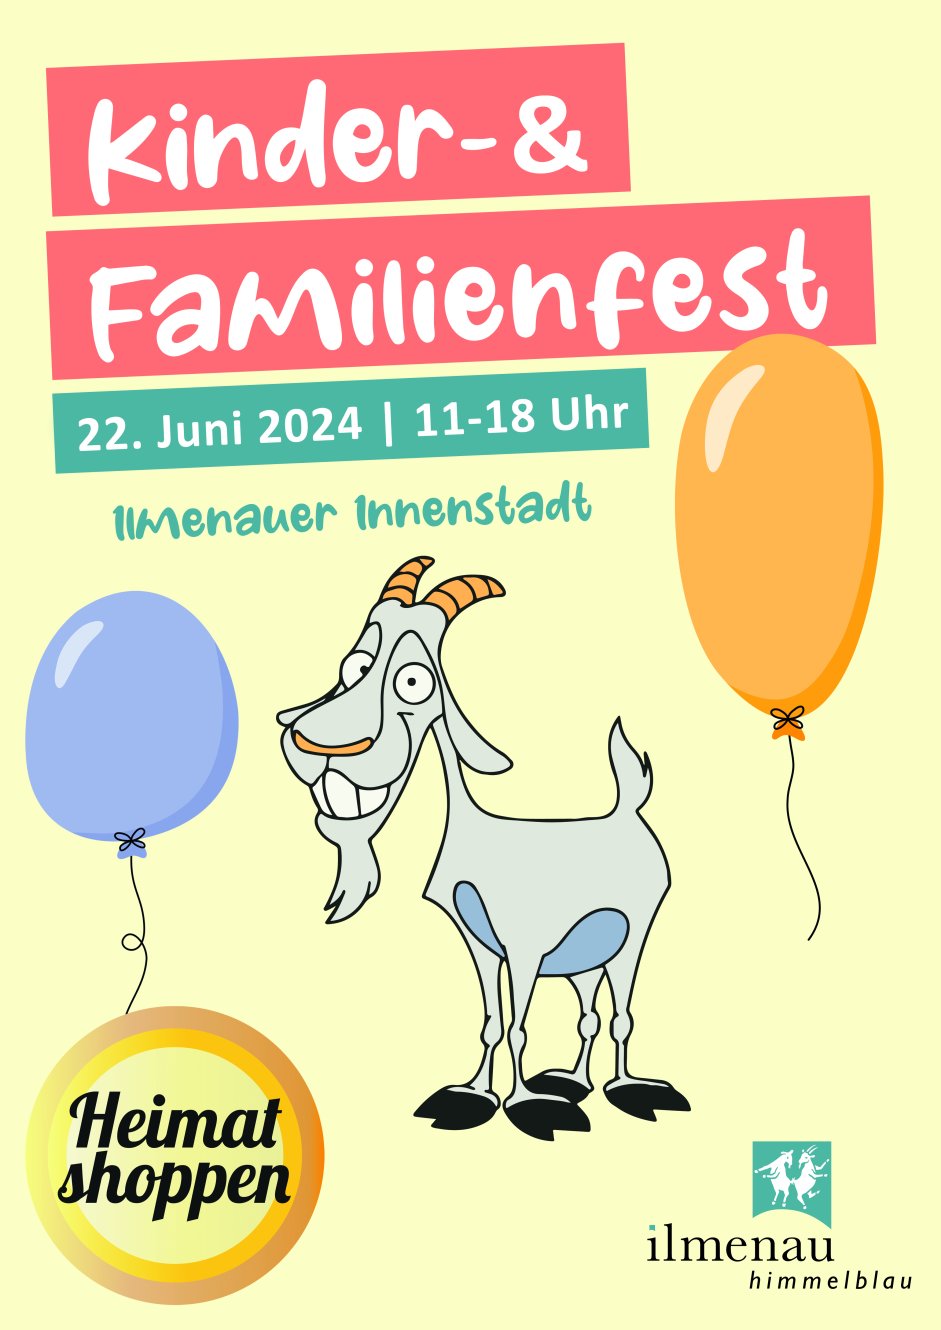 Kinder- und Familienfest Plakat mit Heimatshoppen